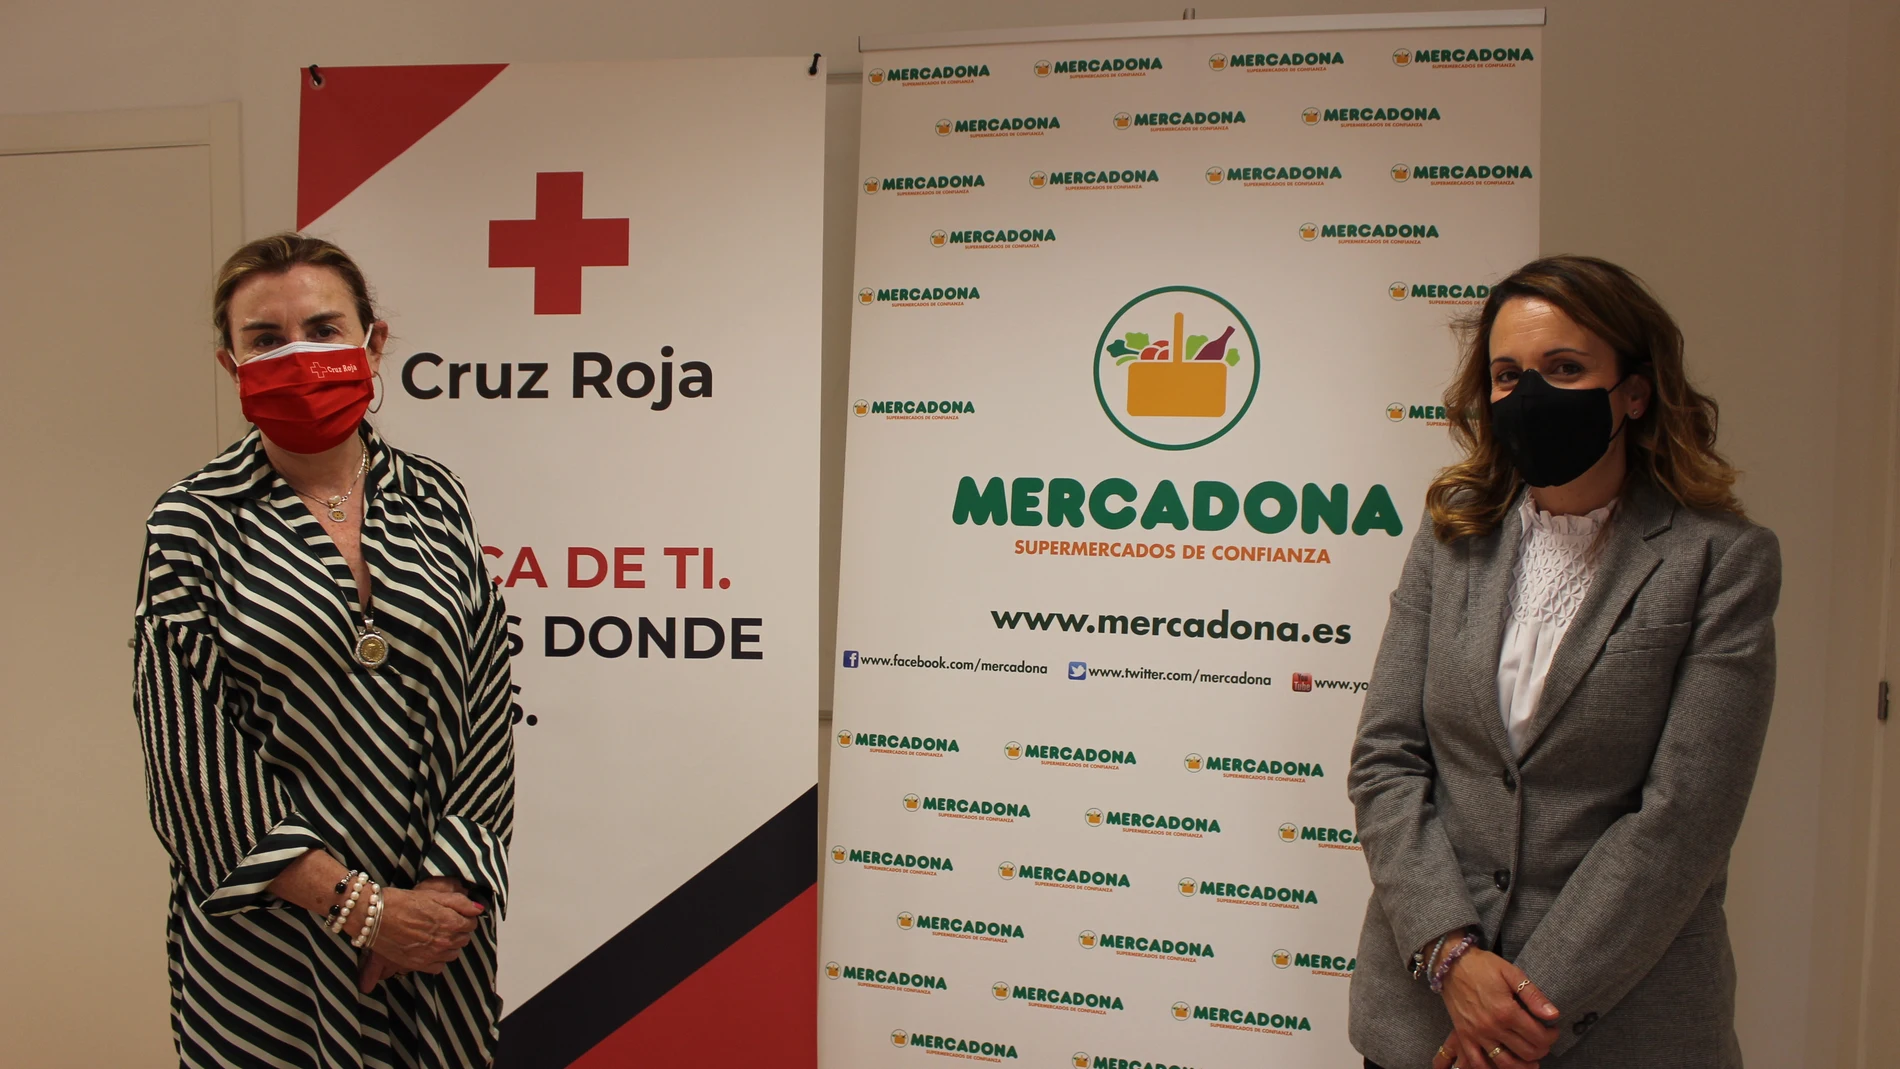 La presidenta provincial de Cruz Roja en Valladolid, Rosa Urbón, y la directora de Relaciones Externas de Mercadona en Valladolid, Laura del Palacio, suscriben el acuerdo